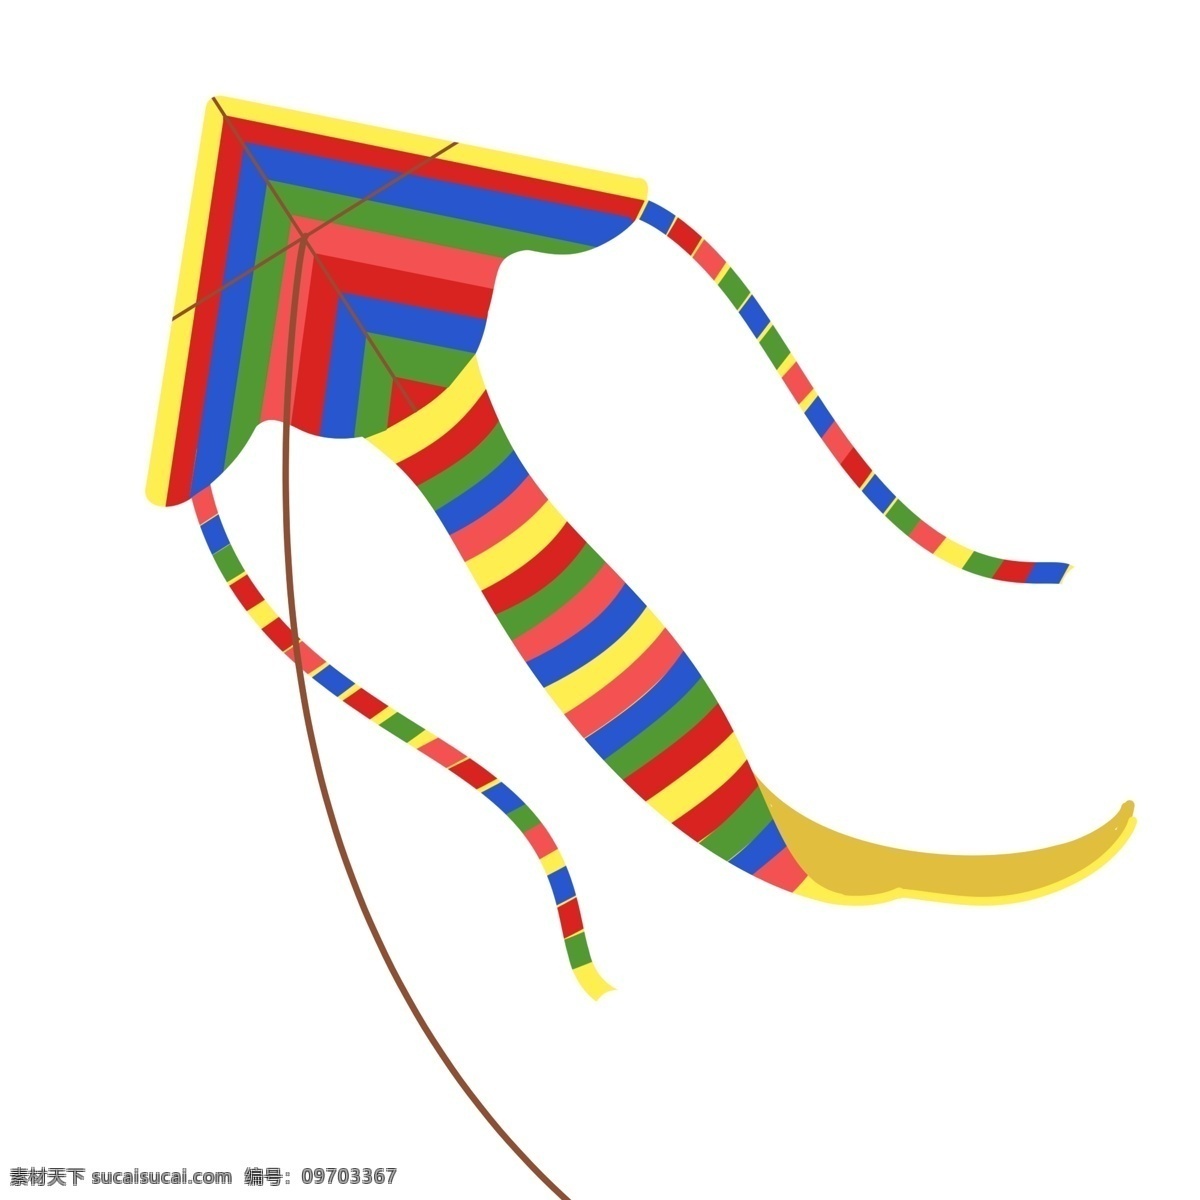 创意 卡通 彩色 风筝 创意风筝 童趣风筝 彩色花纹风筝 放飞风筝 周末放风筝 漂亮的风筝 插画